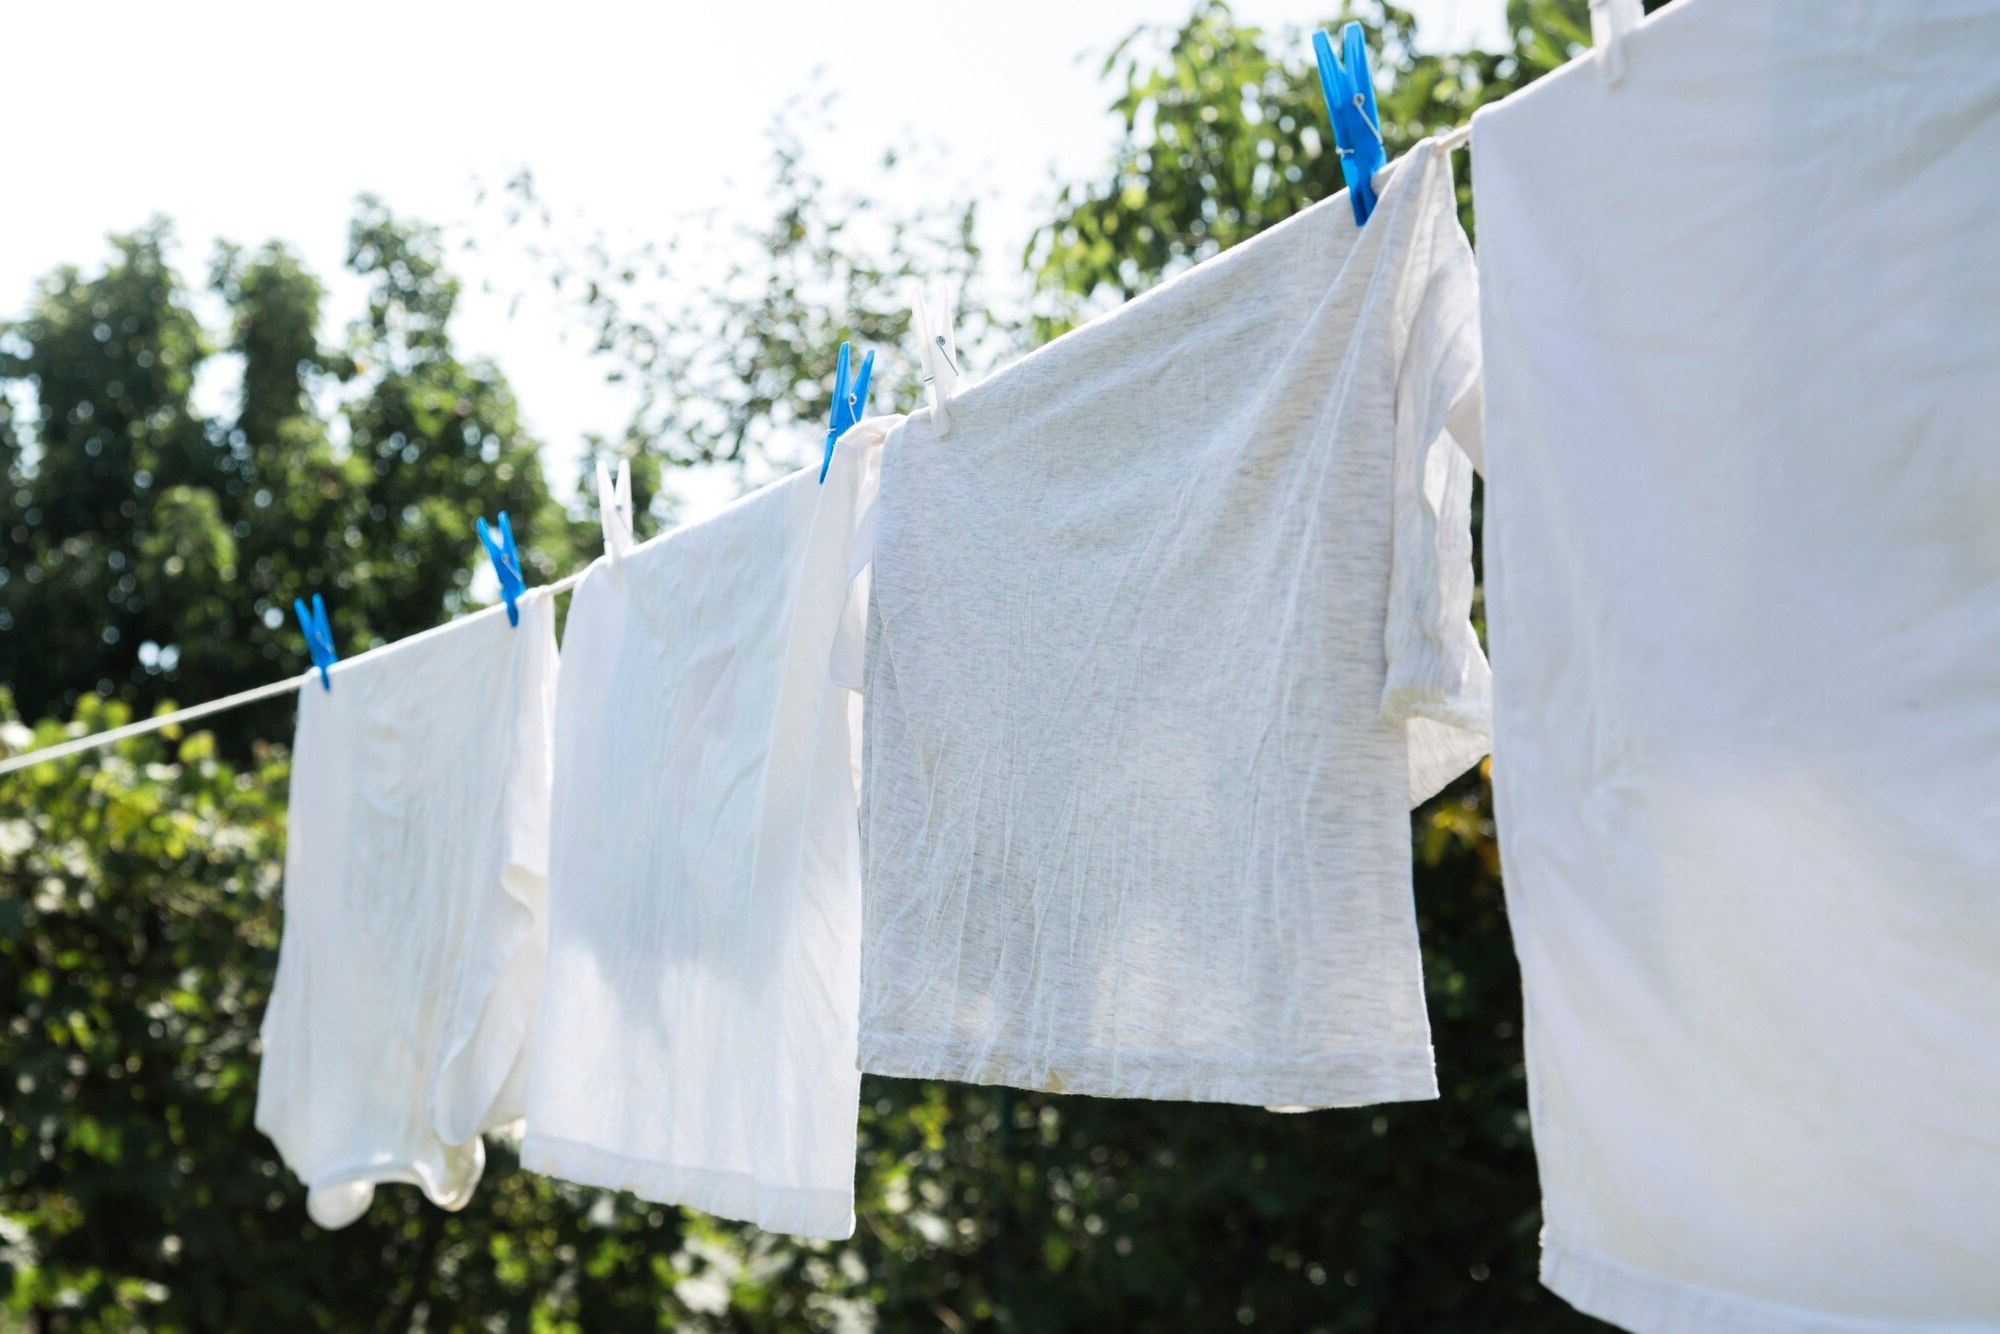 Veel voorkomende fout bij het drogen van kleding die energierekeningen doet exploderen - maar er is een eenvoudige oplossing